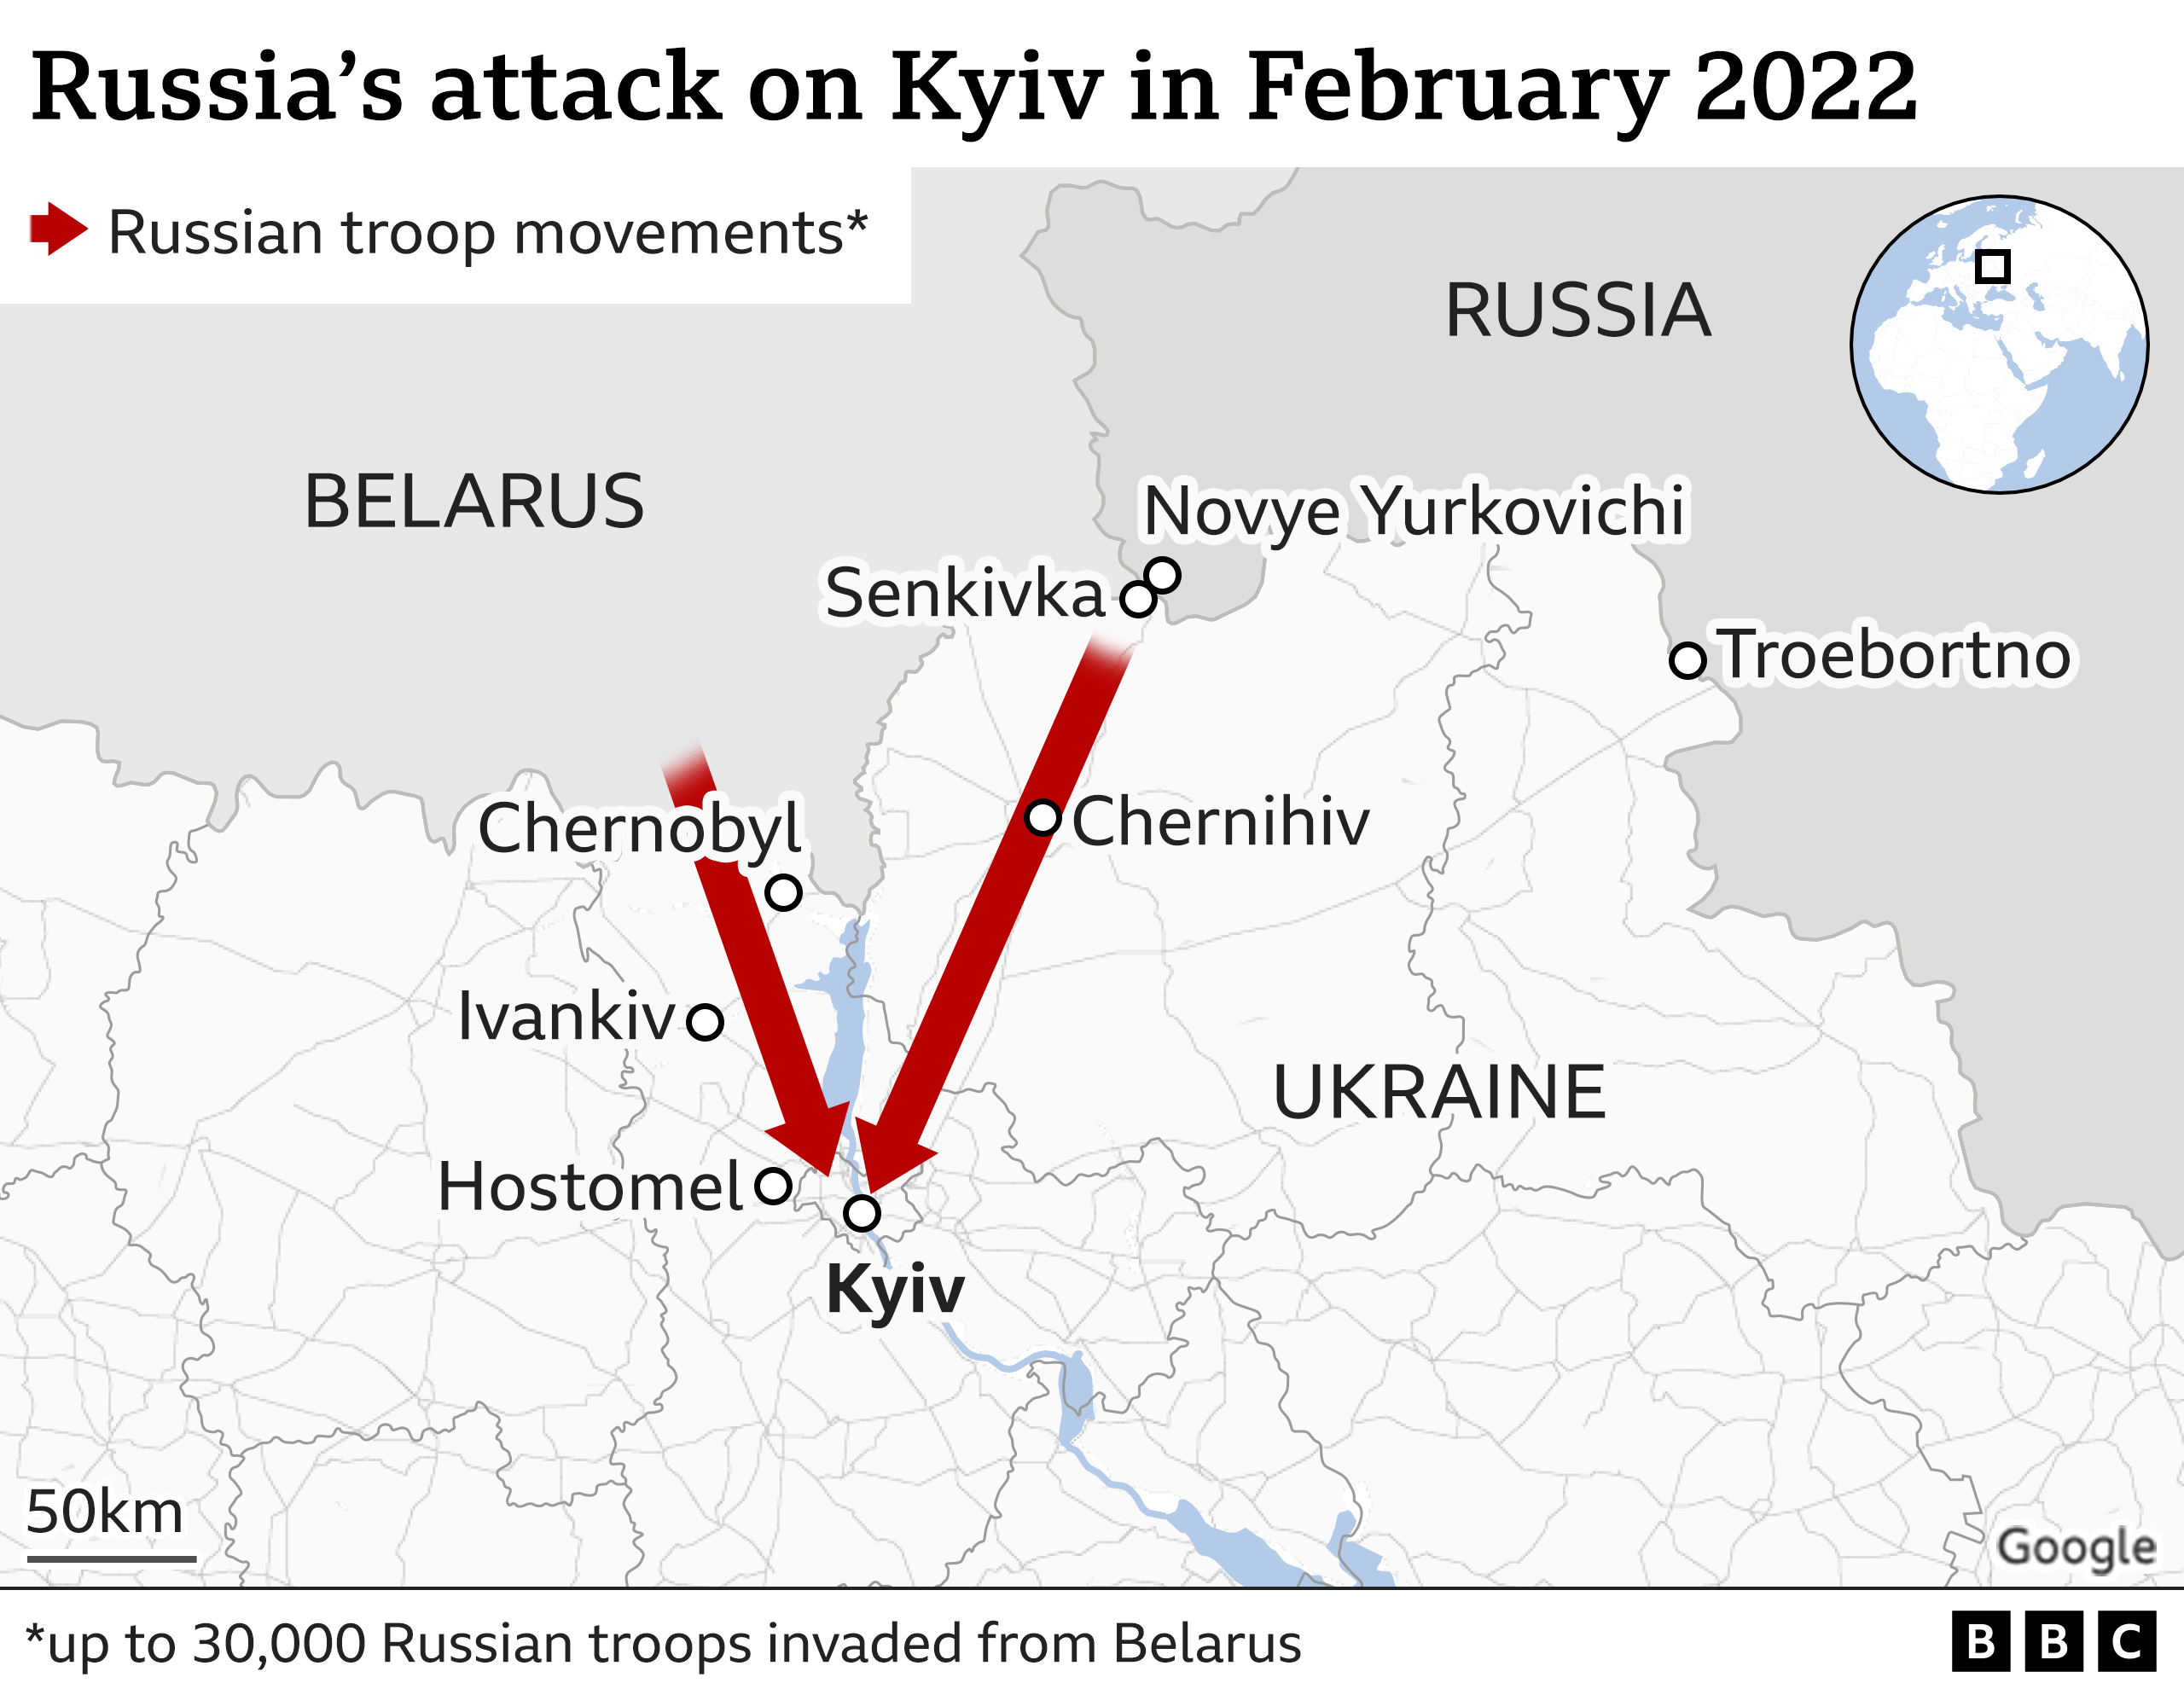 Mappa delle rotte di invasione nel nord dell'Ucraina dalla Bielorussia e dalla Russia